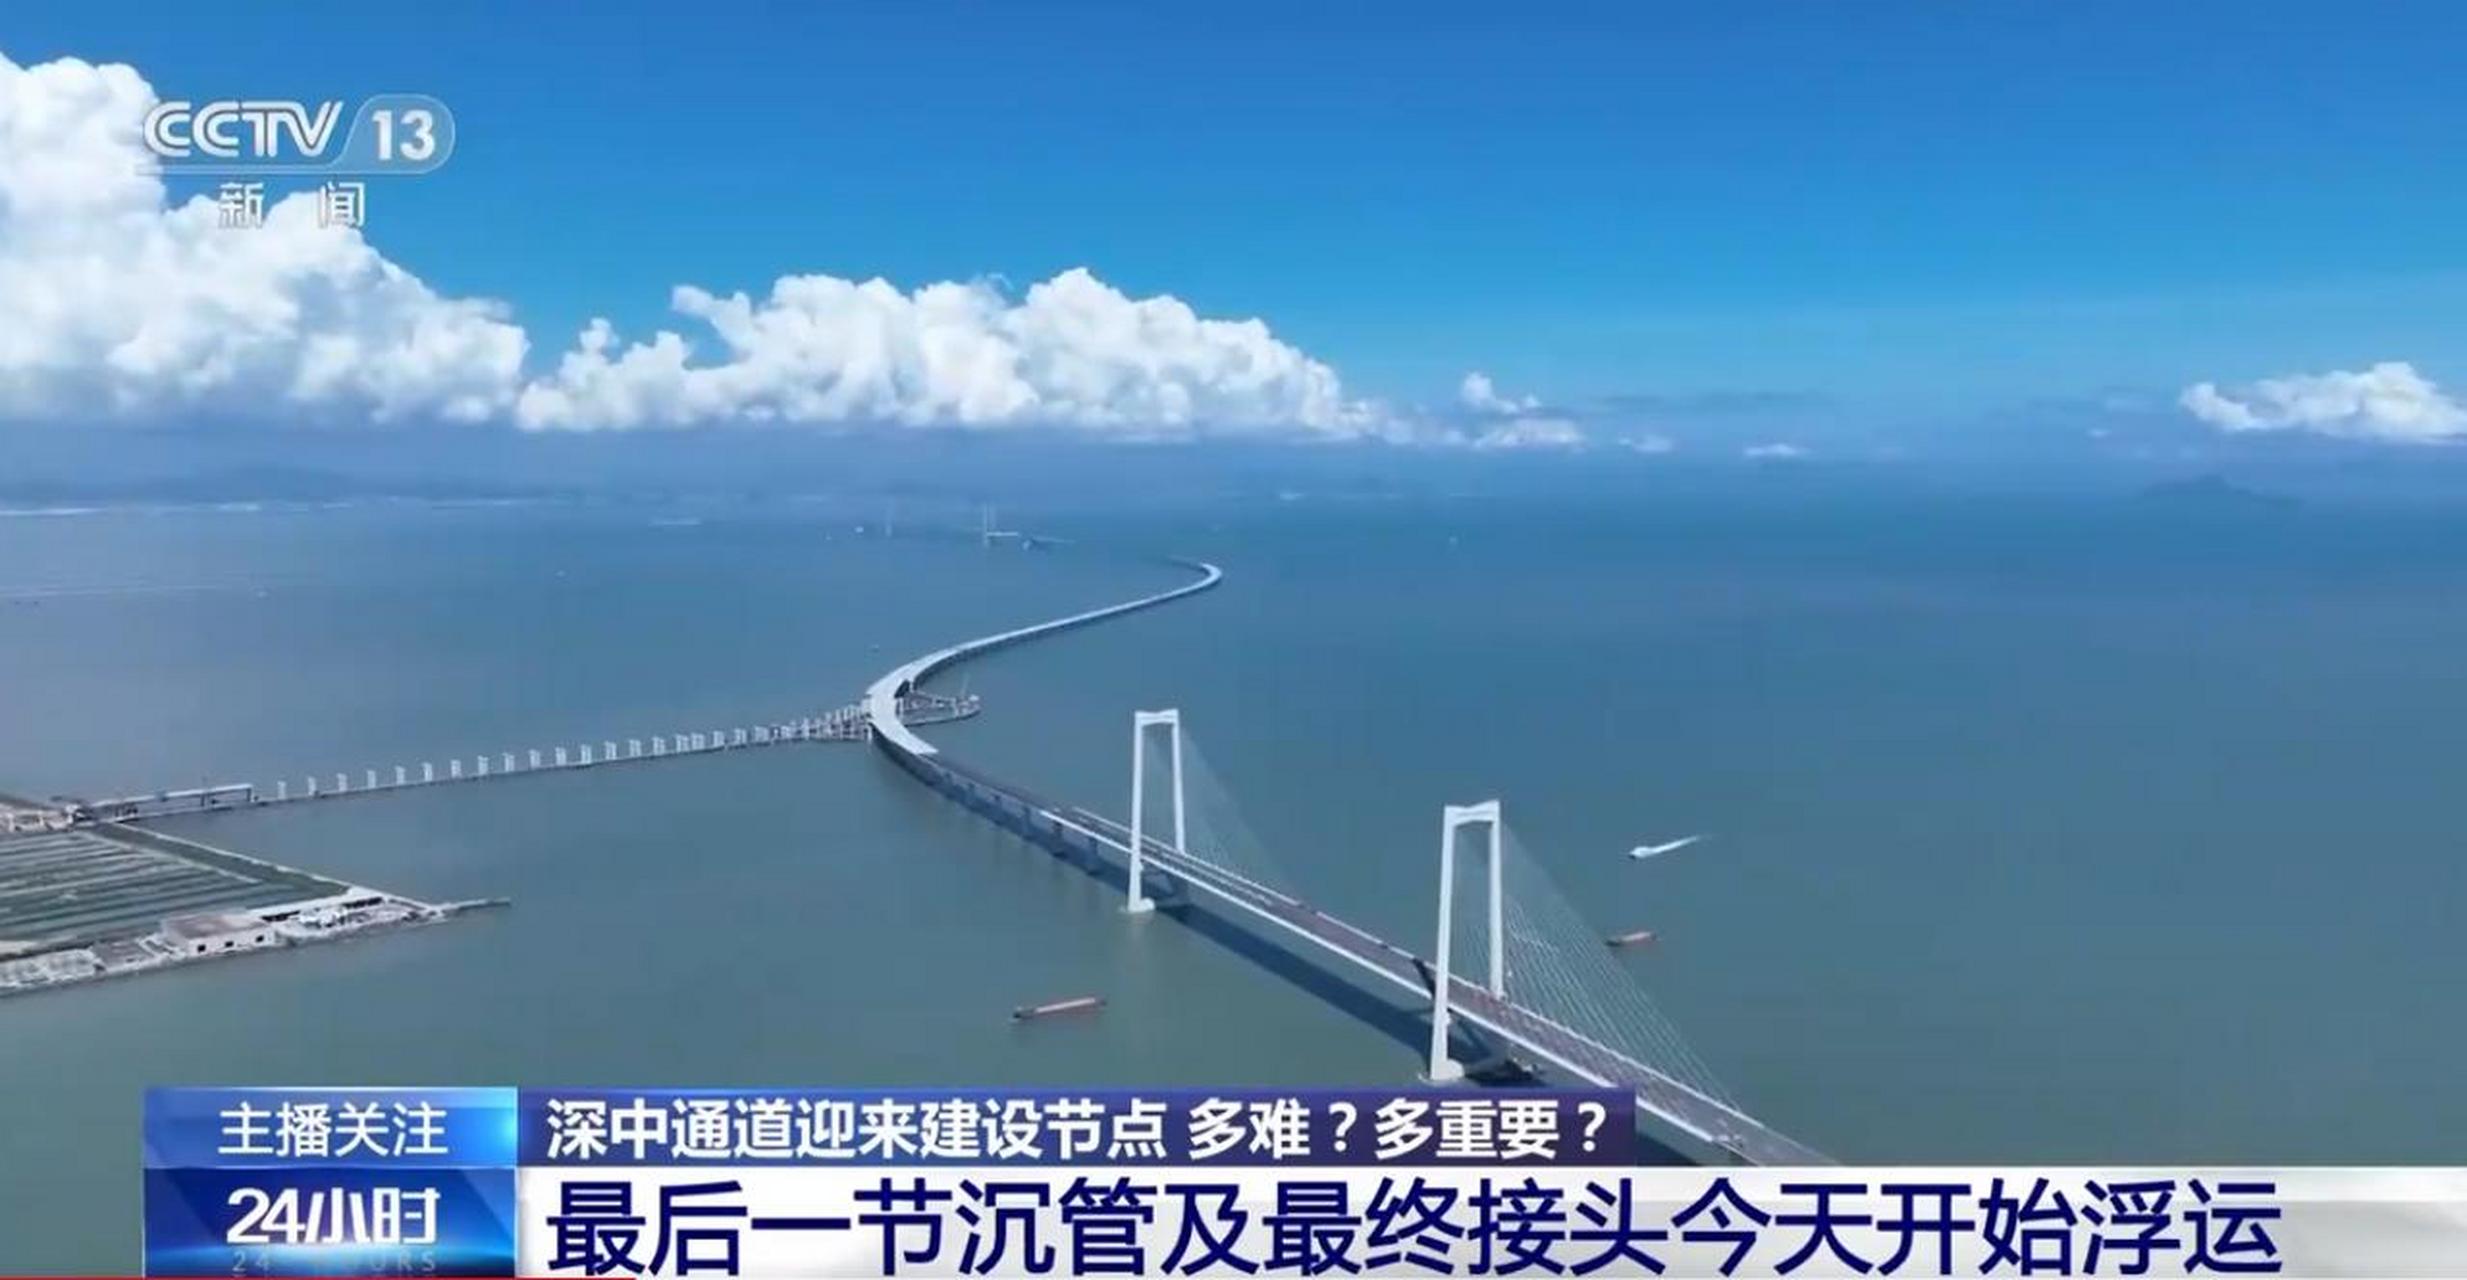 6月8日9时50分,广东省交通集团发布消息,深中通道海底沉管隧道最后一